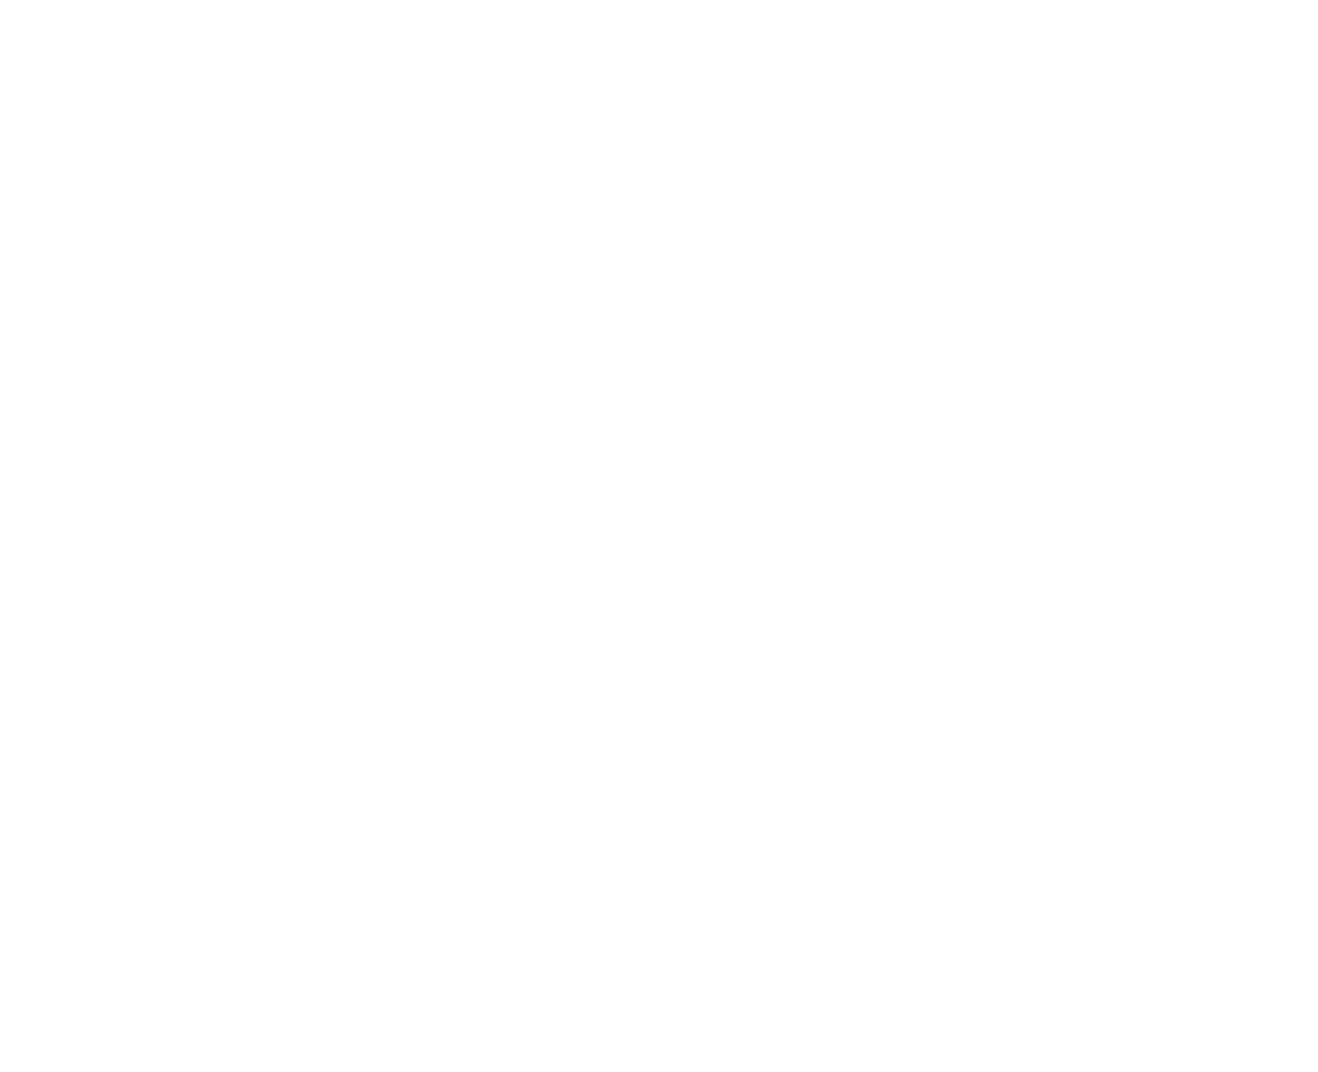 Катя Никoнорова, Патша Бағында, 2021, қағаздағы коллаждалған ақжаймалар, 59 x 74 см, 23 x 29 инч